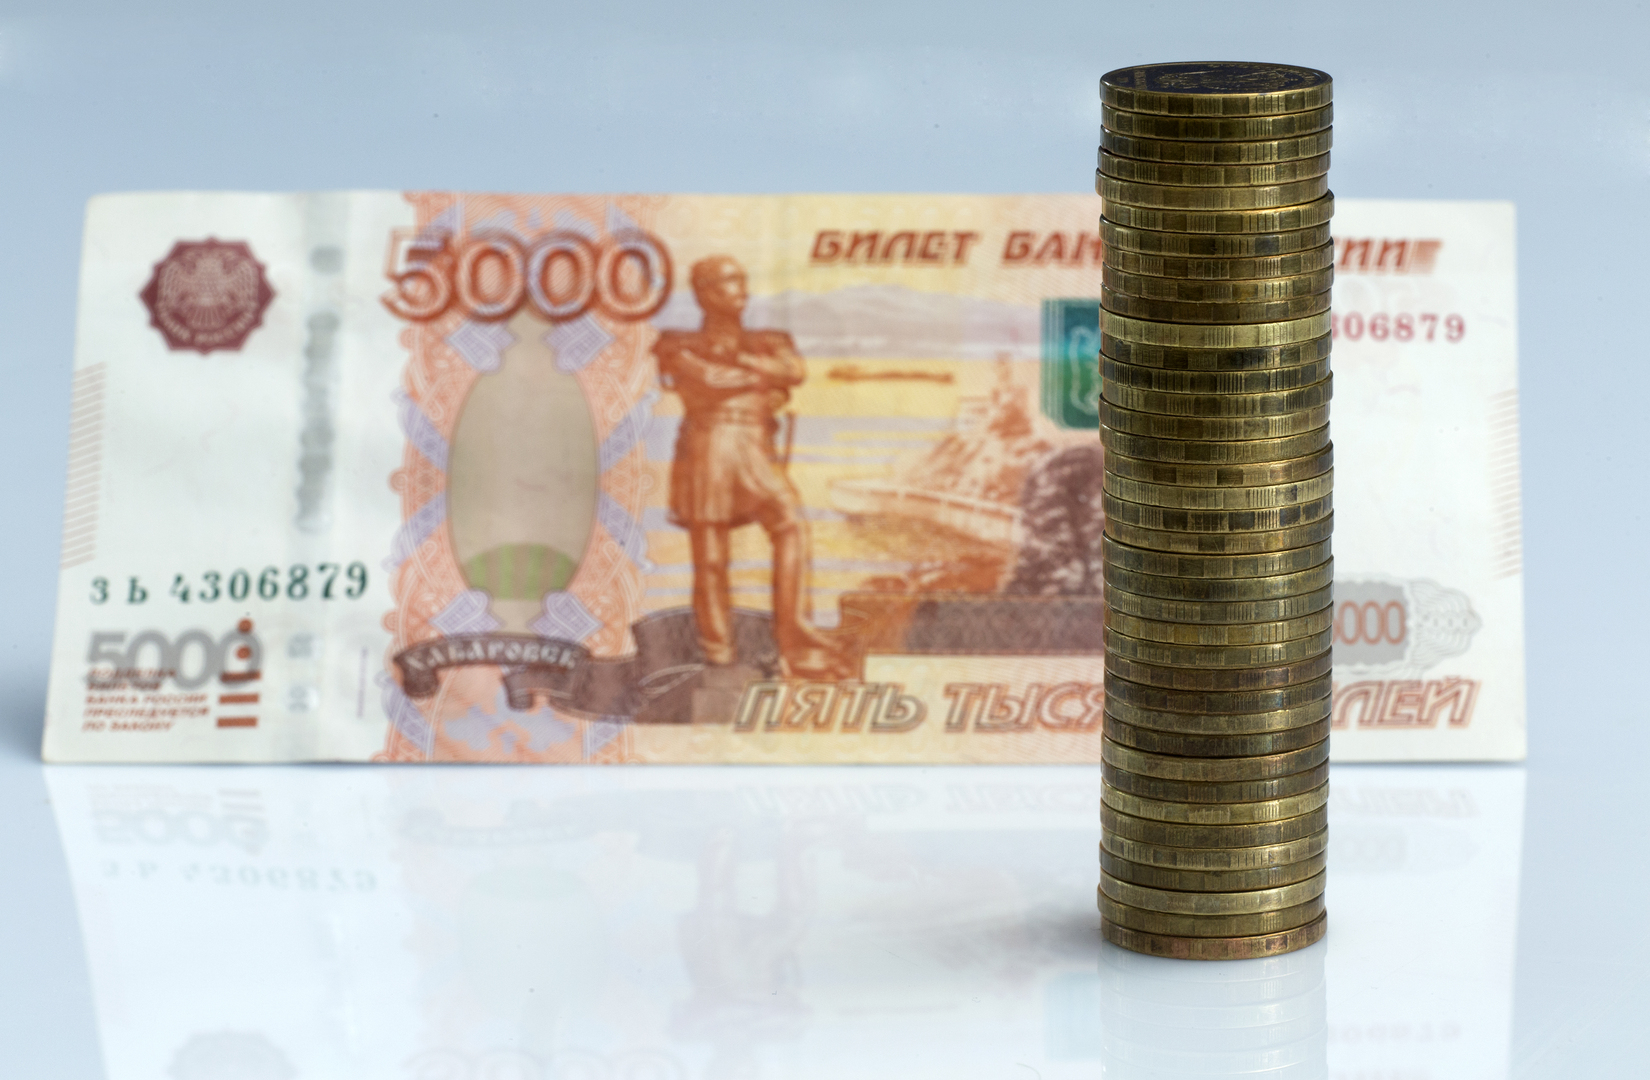 المركزي الروسي يعلن استنئاف تداولات الأسهم في بورصة موسكو بعد توقف دام نحو شهر